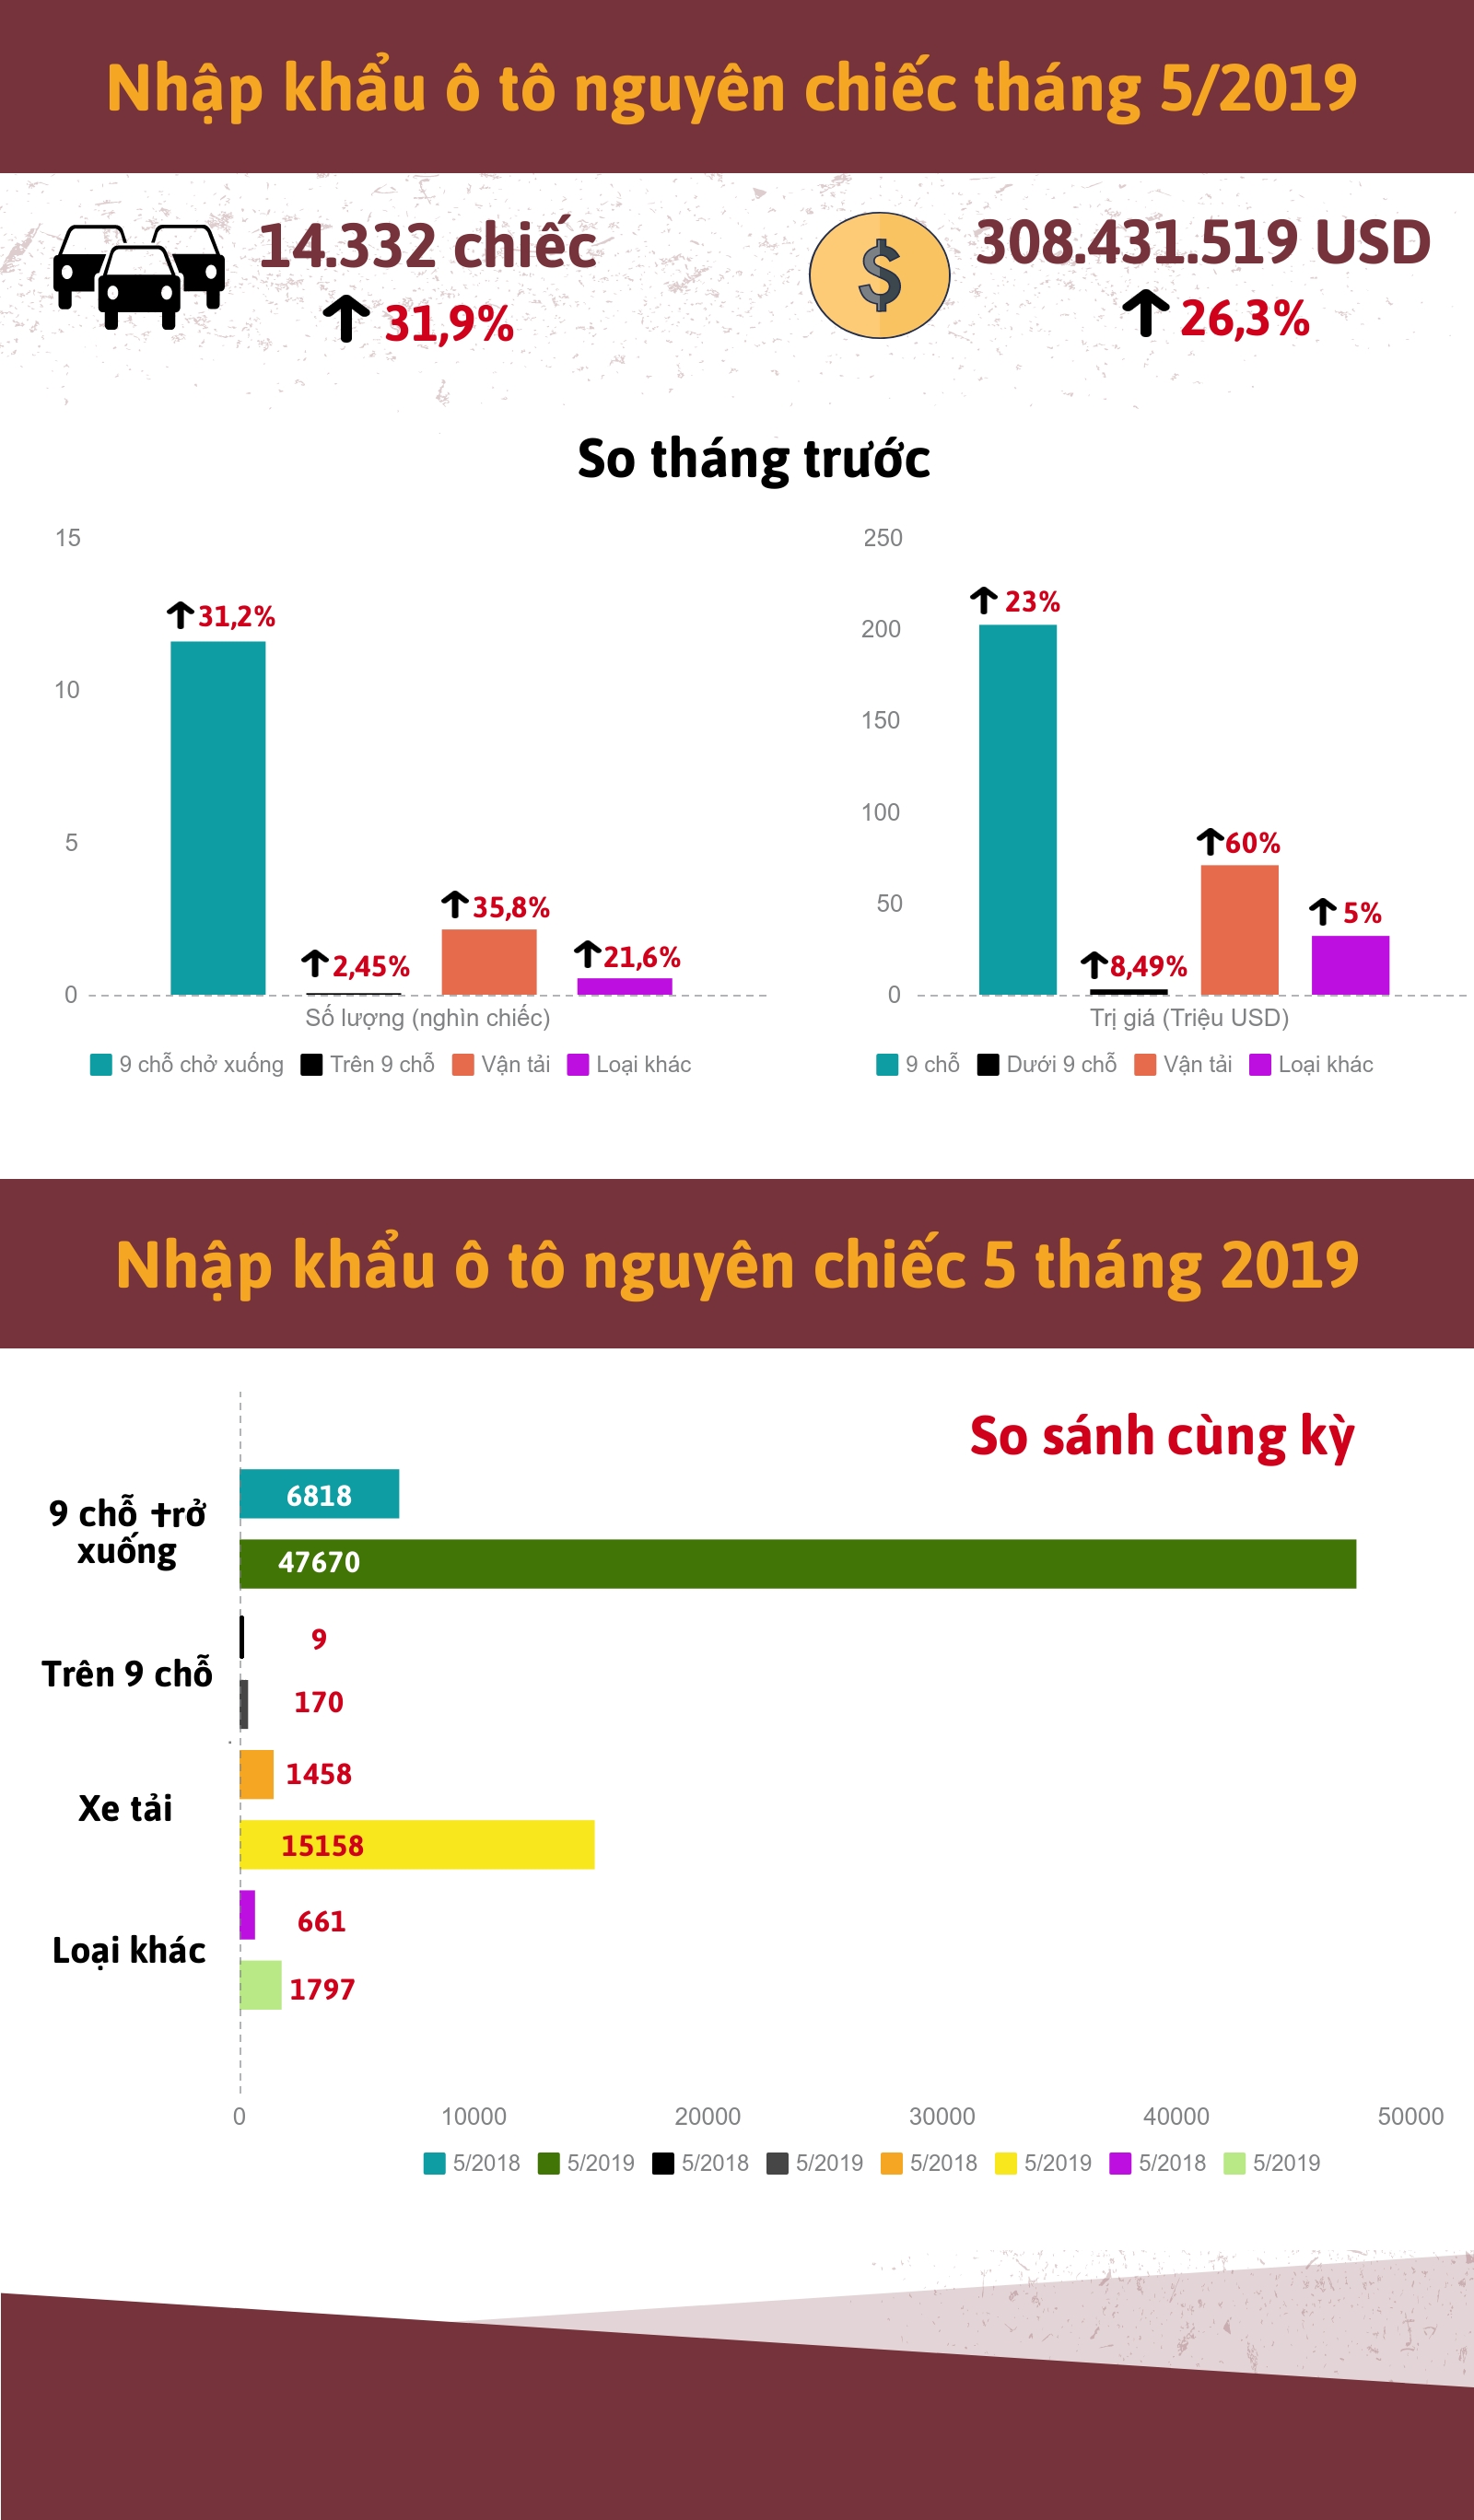 [Infographic] Nhập khẩu ô tô tháng 5/2019